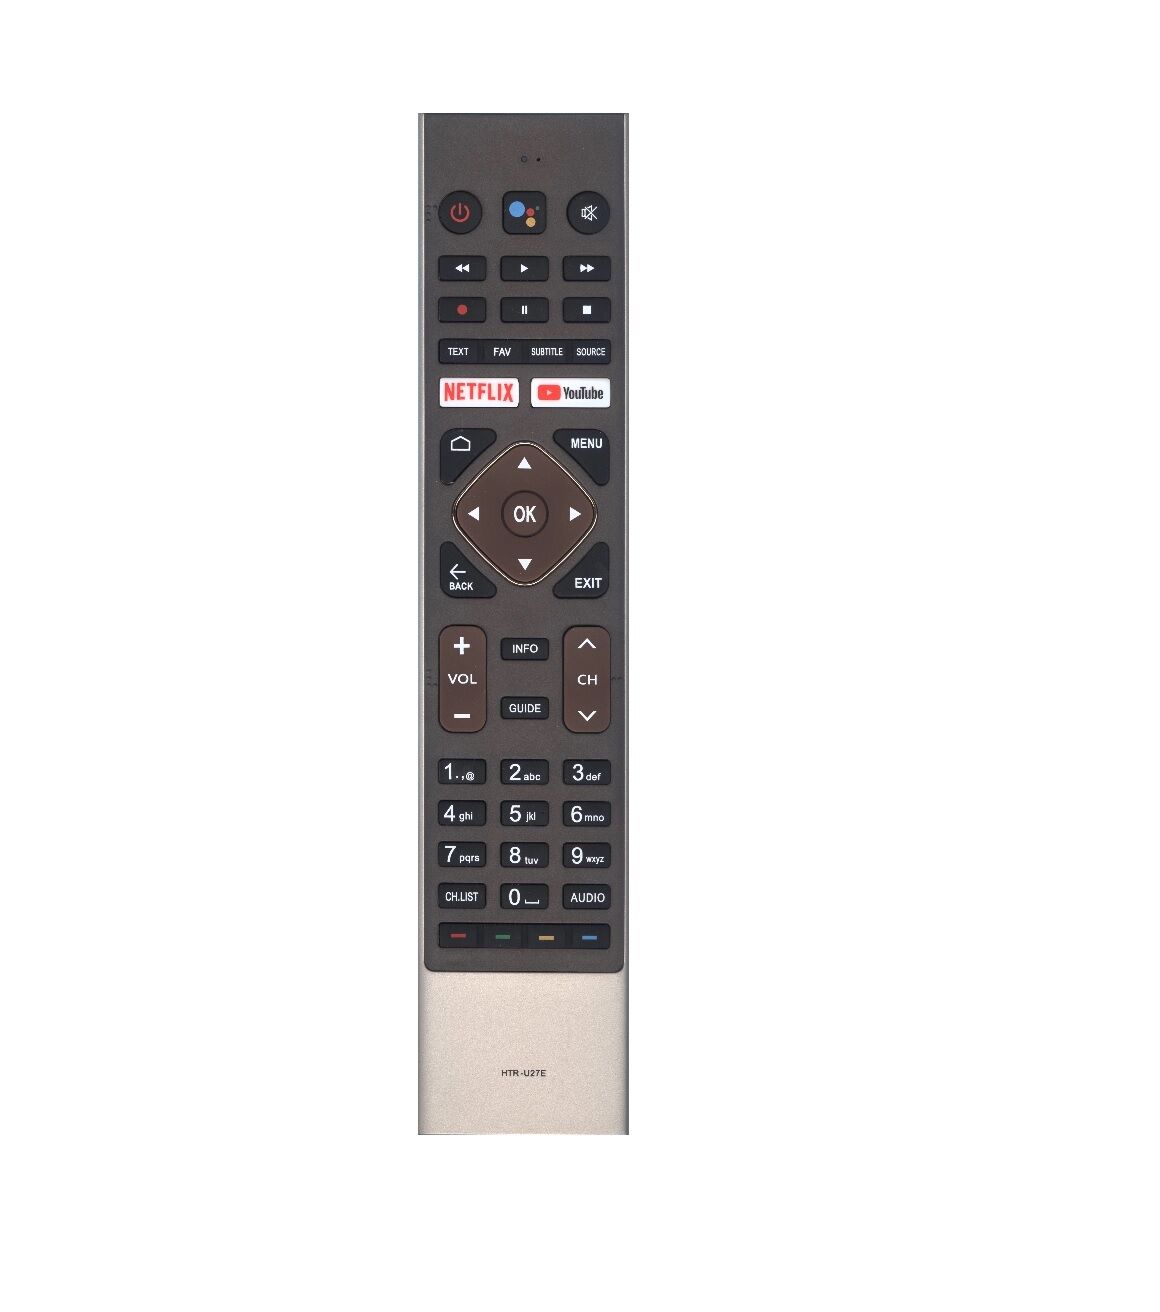 Пульт ДУ Blaupunkt HE-V2 ( Haier HTR-U27E ) с голосовой функцией Smart TV